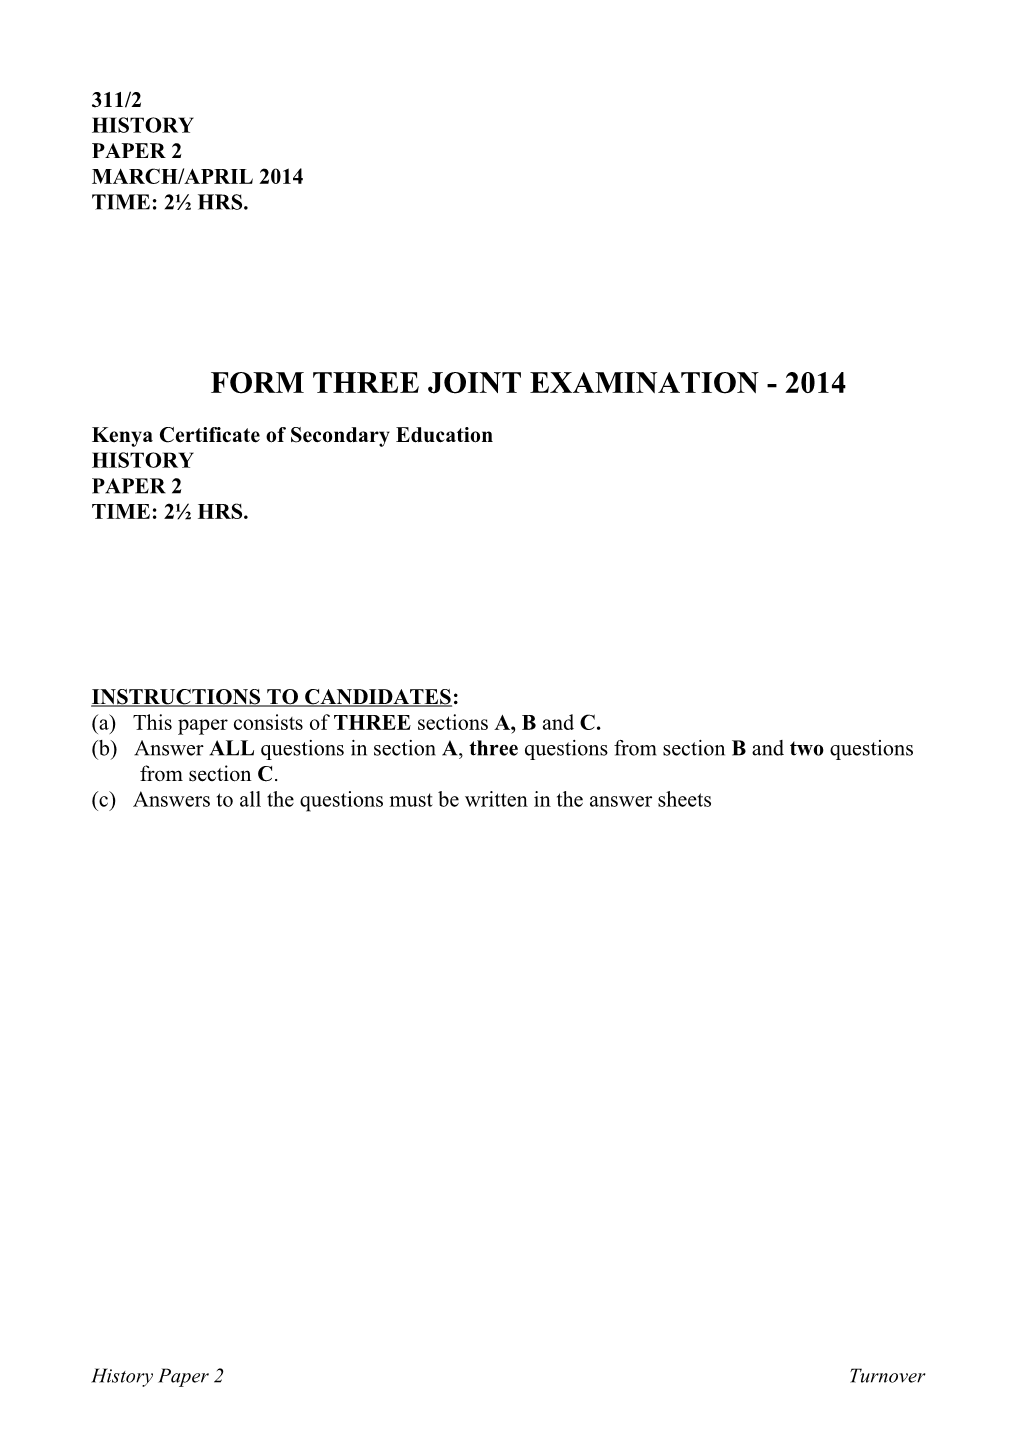 Form Three Joint Examination - 2014